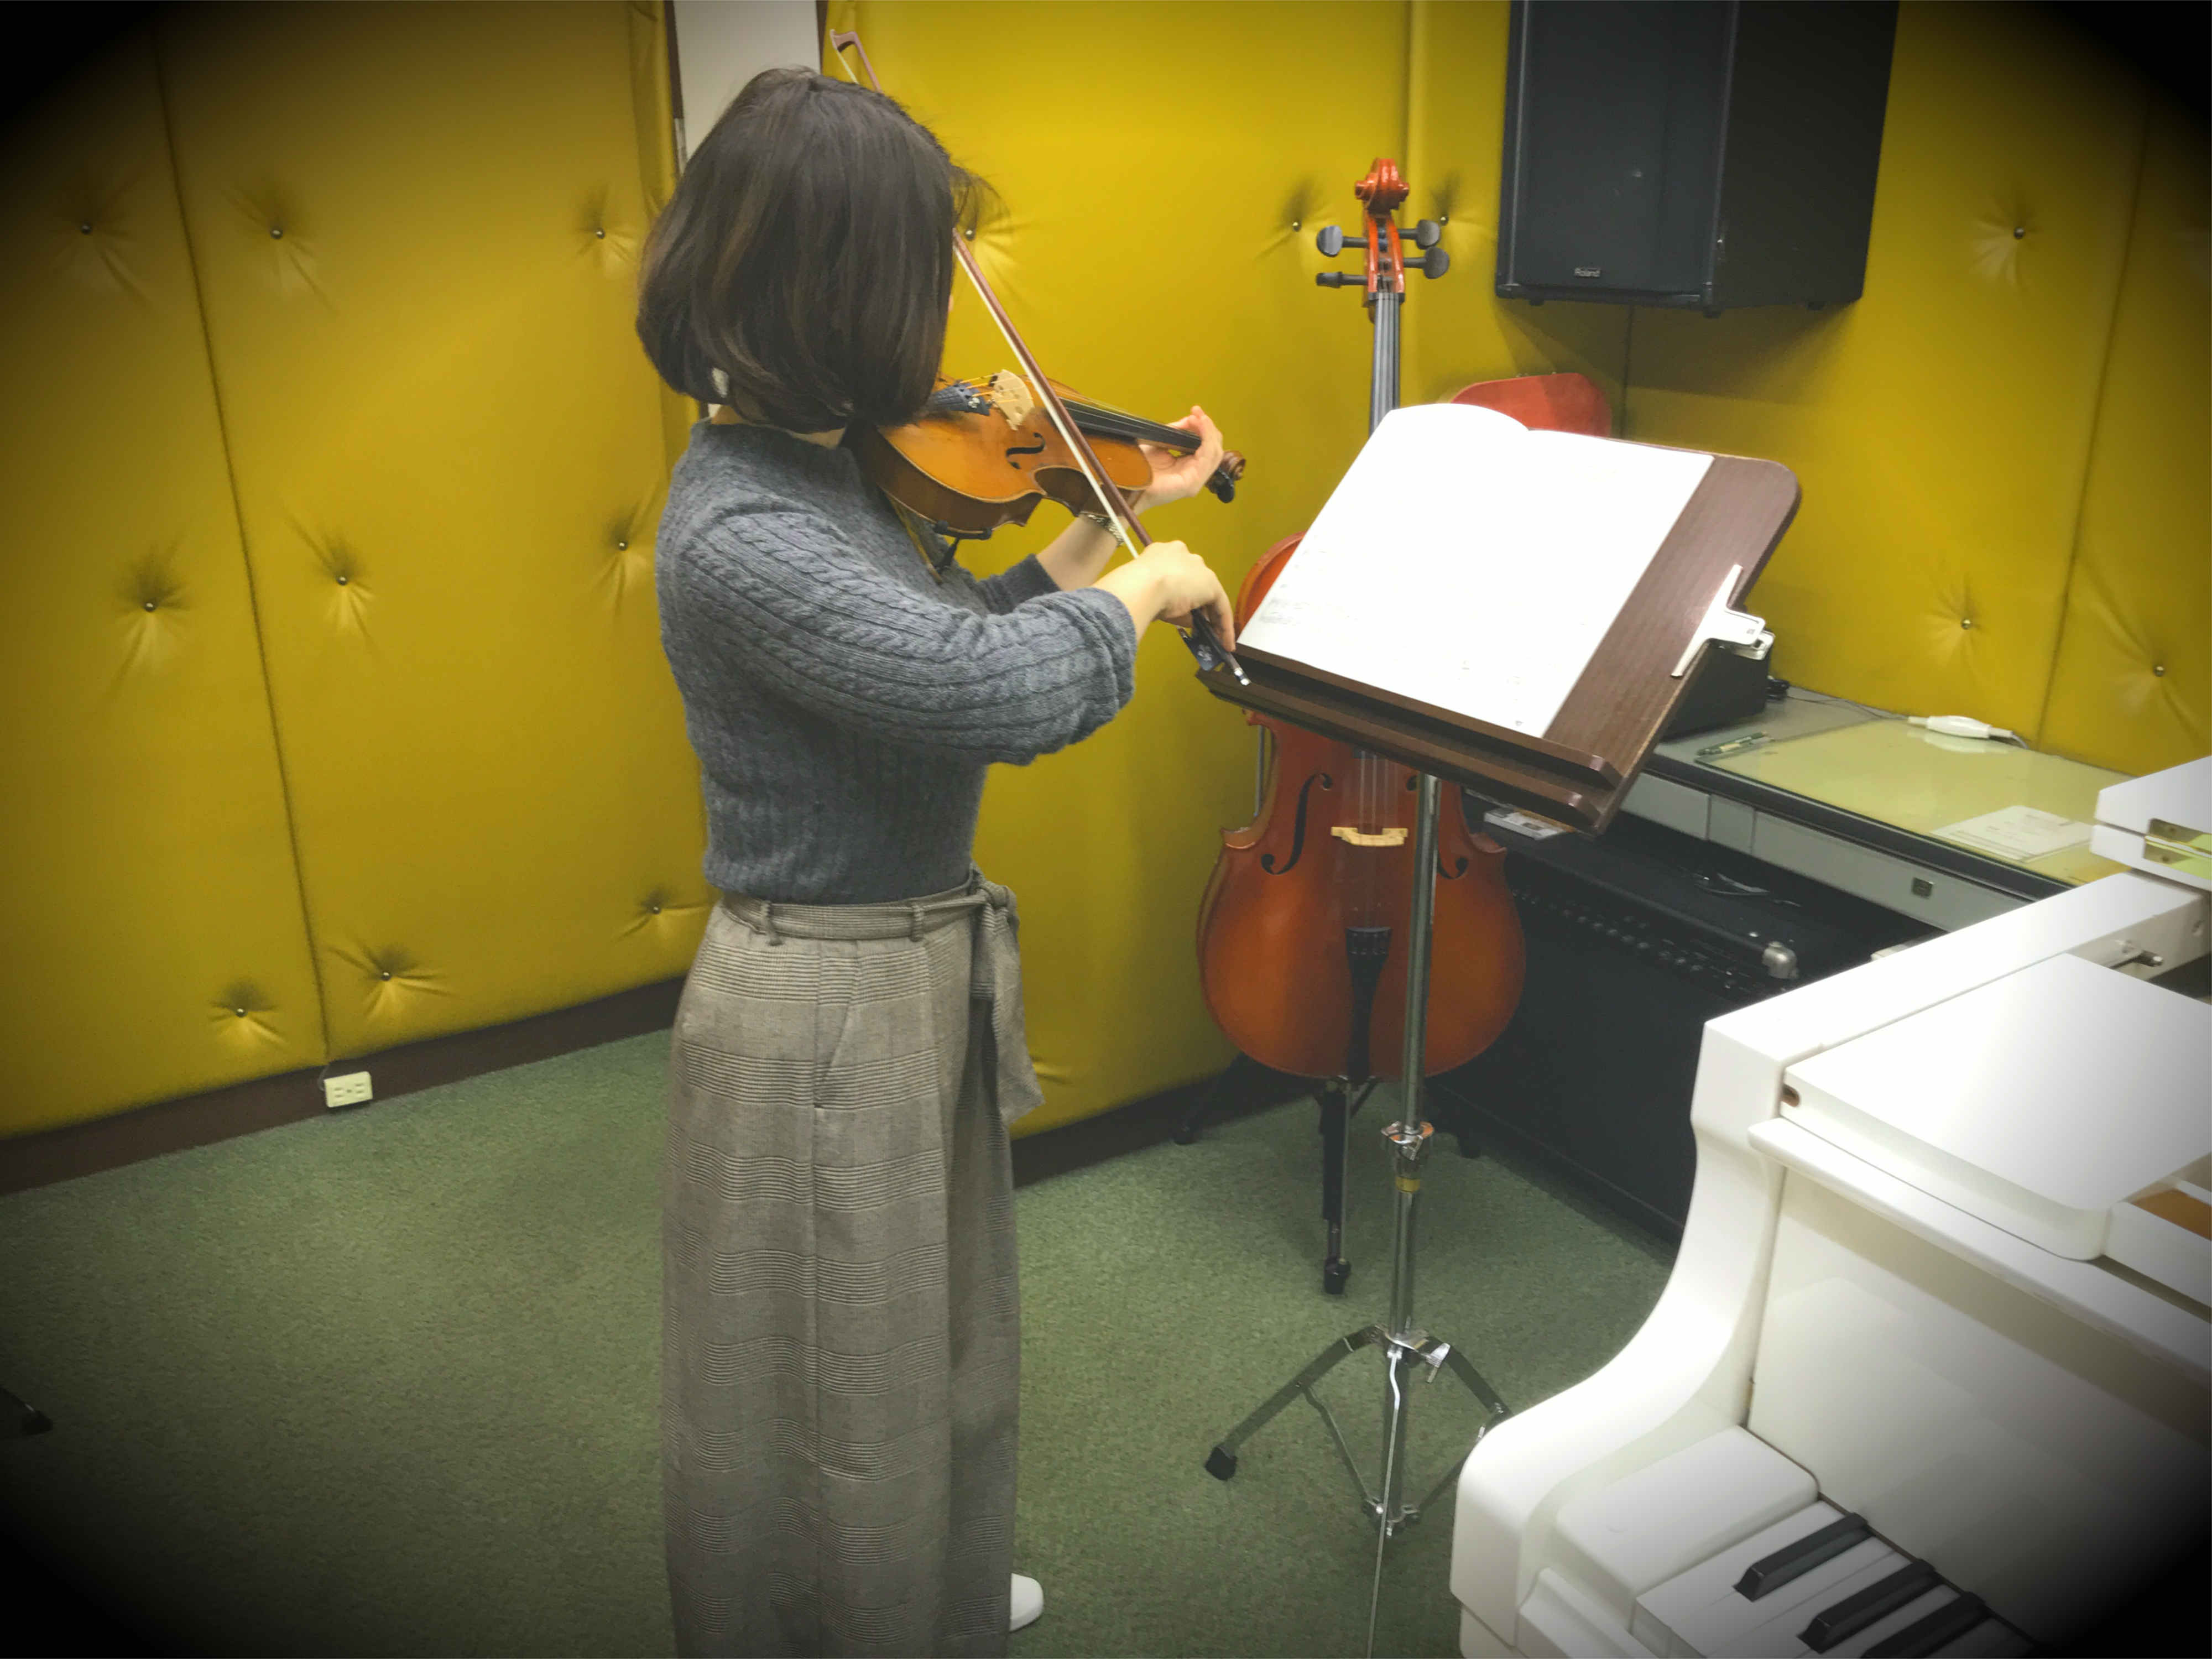 田中楽器音楽教室 堺市鳳おおとりでバイオリンやチェロの本格レッスン